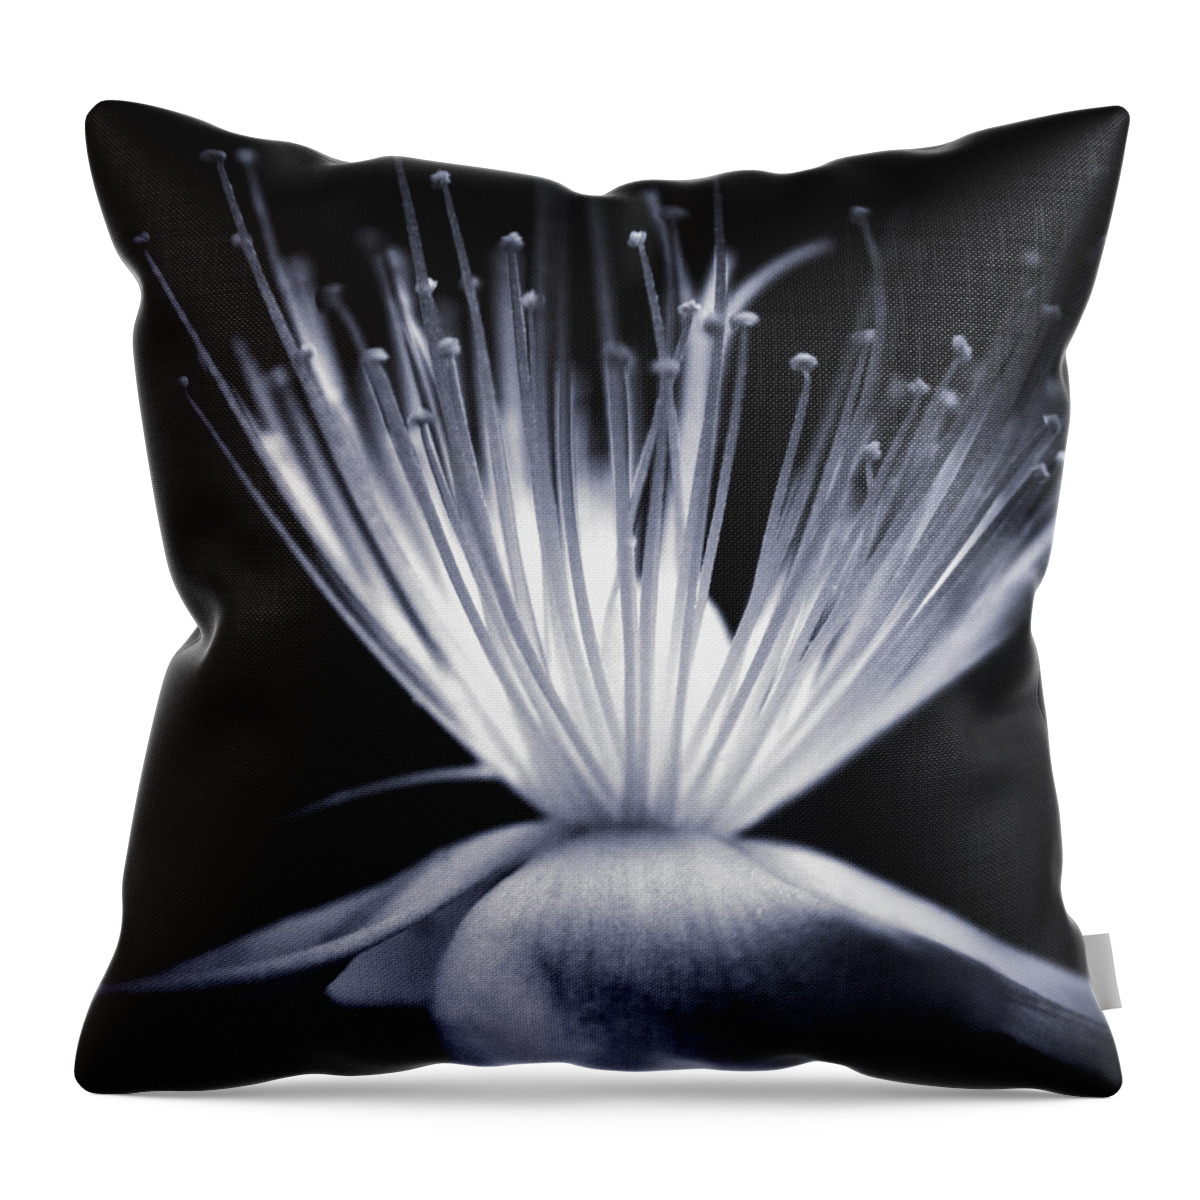 Art Throw Pillow featuring the photograph Blaze by Dorit Fuhg